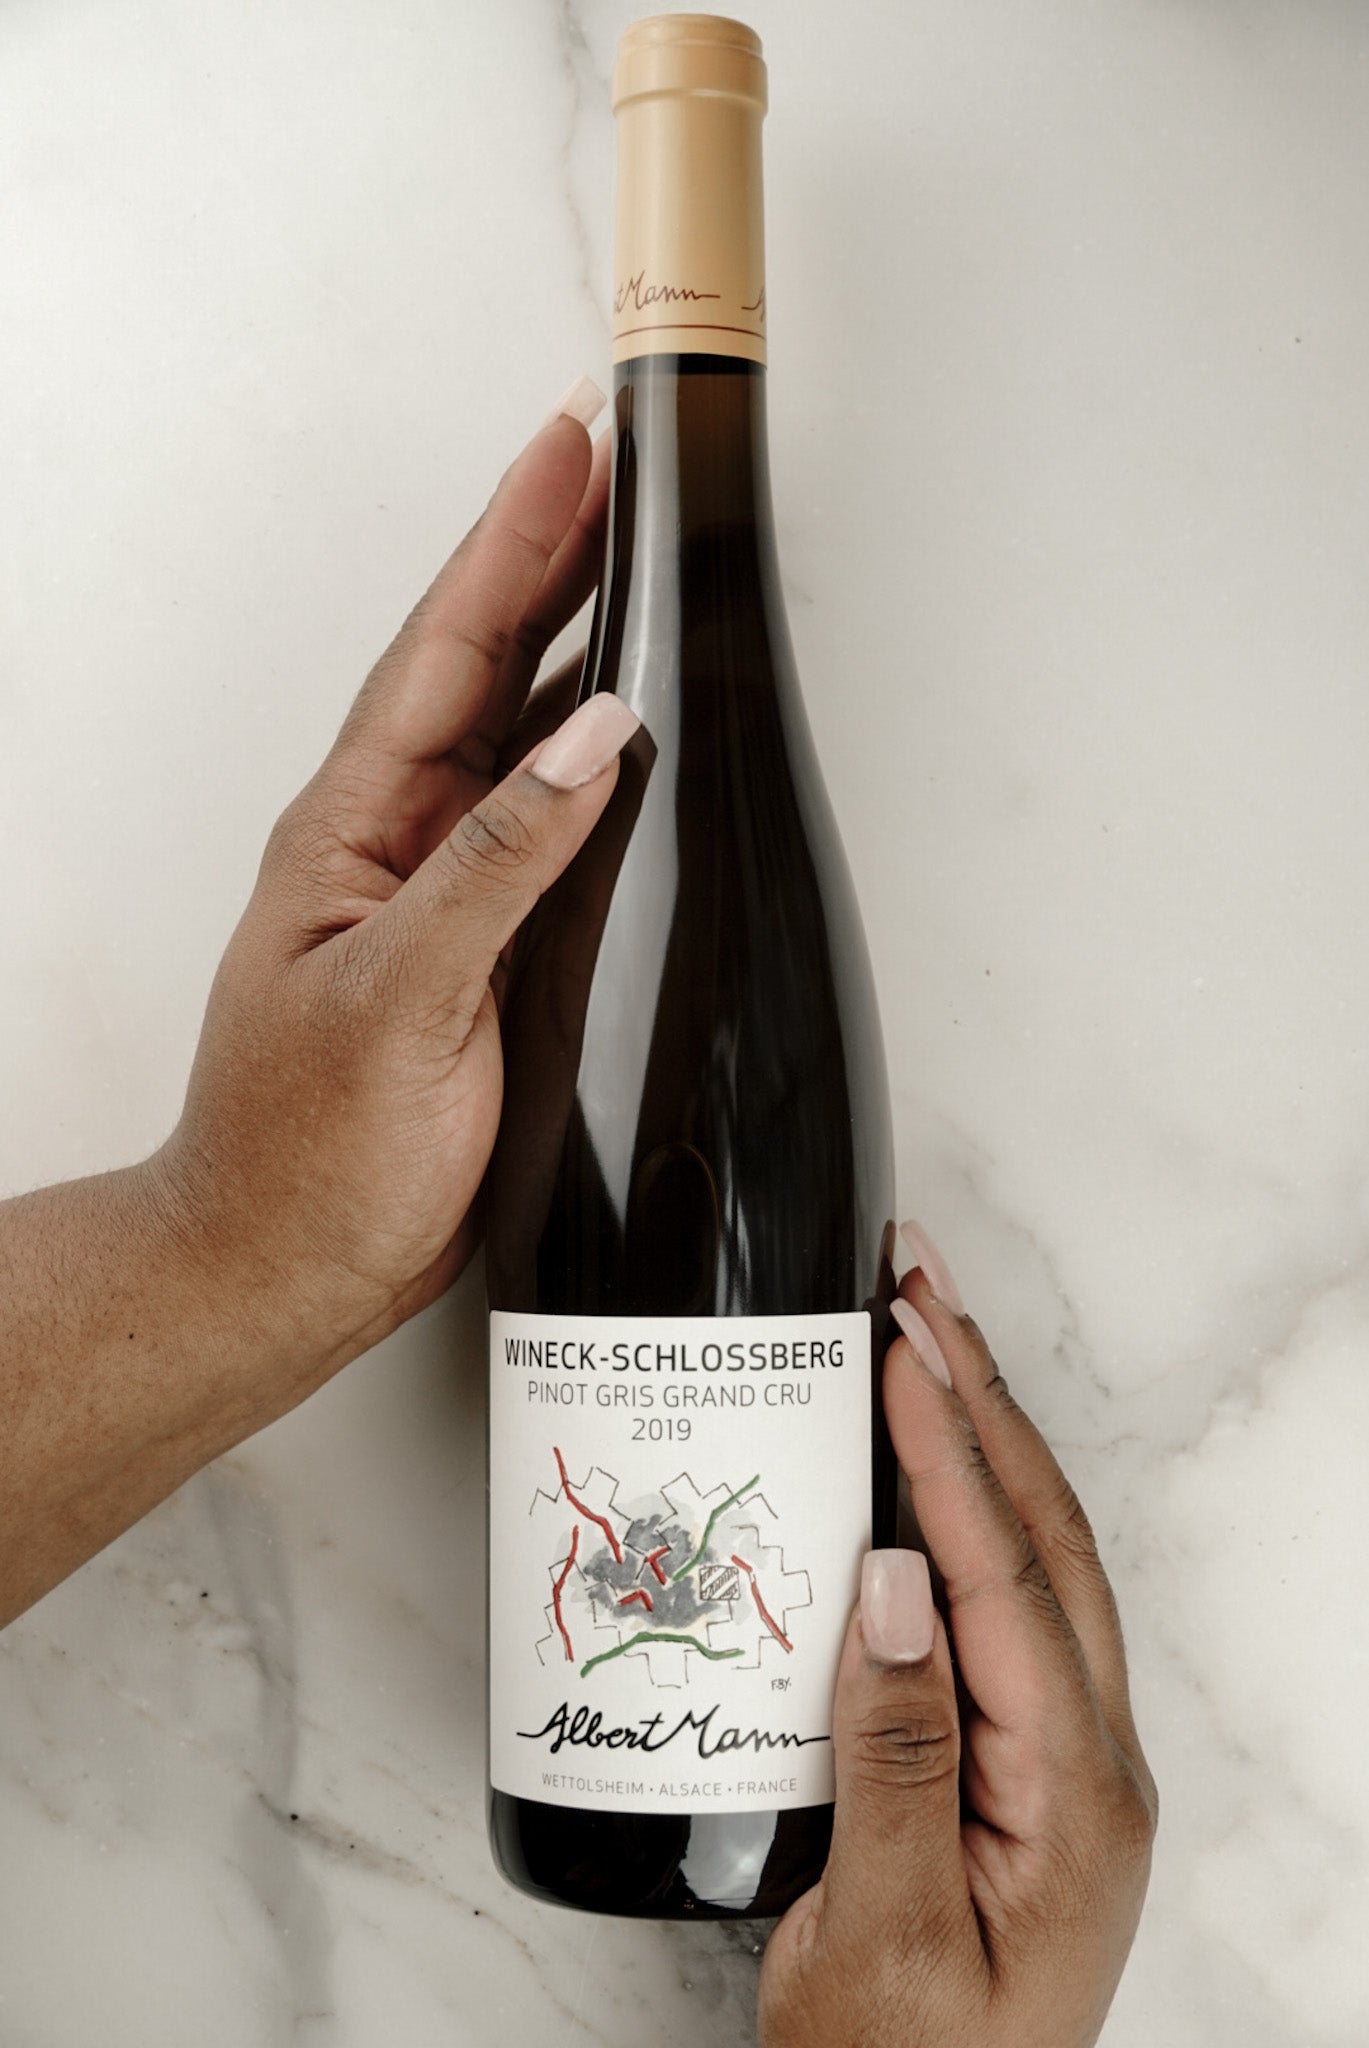 Albert Mann Alsace Grand Cru Pinot Gris Wineck-Schlossberg Dry Wine (2019)